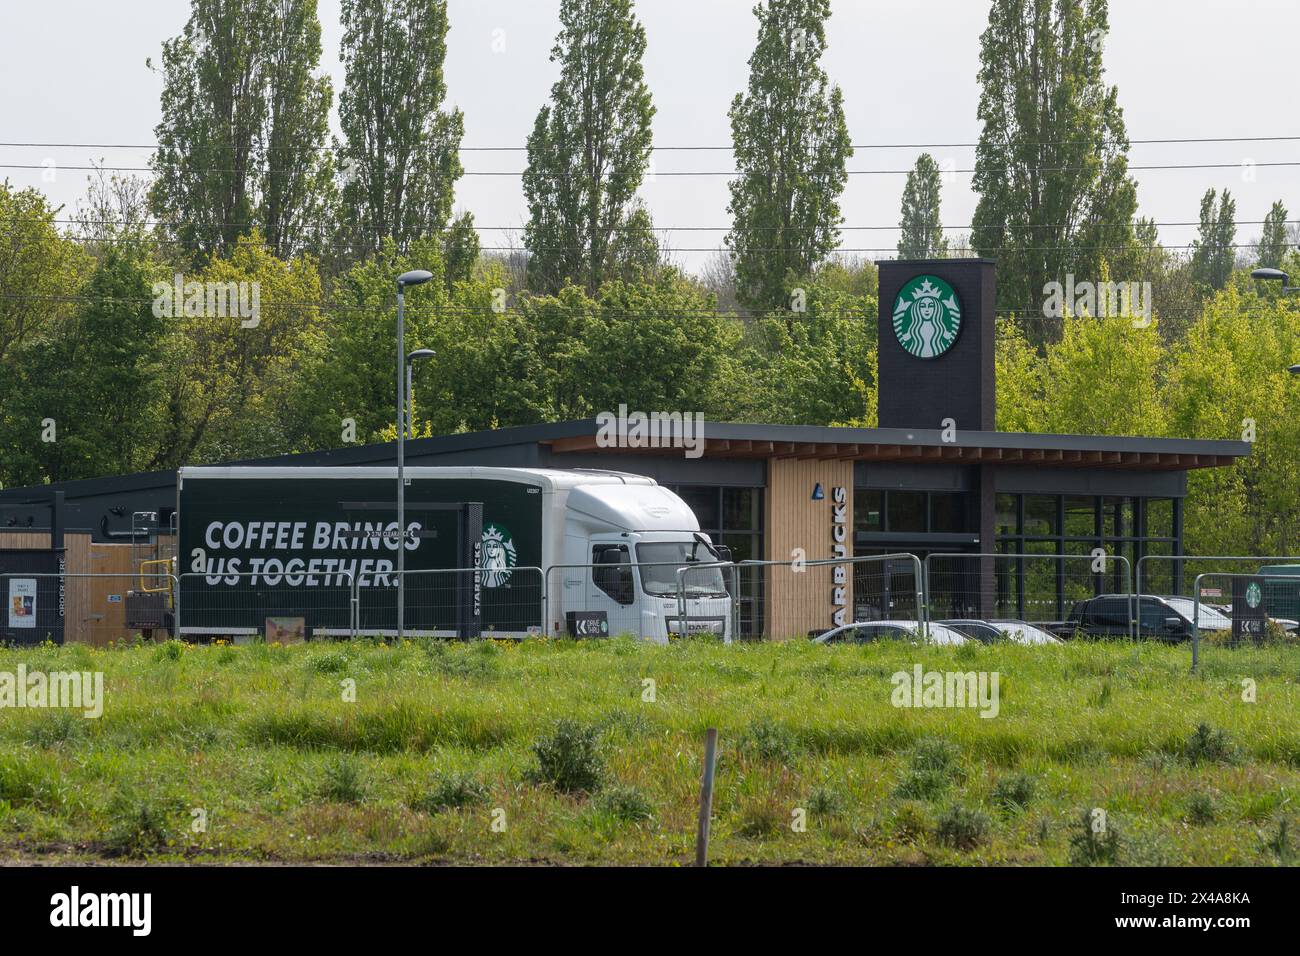 Starbucks Drive-Thru Coffee Shop avec fourgon de livraison ou camion avec café nous réunit sur Side, Tongham services, Surrey, Angleterre, Royaume-Uni Banque D'Images